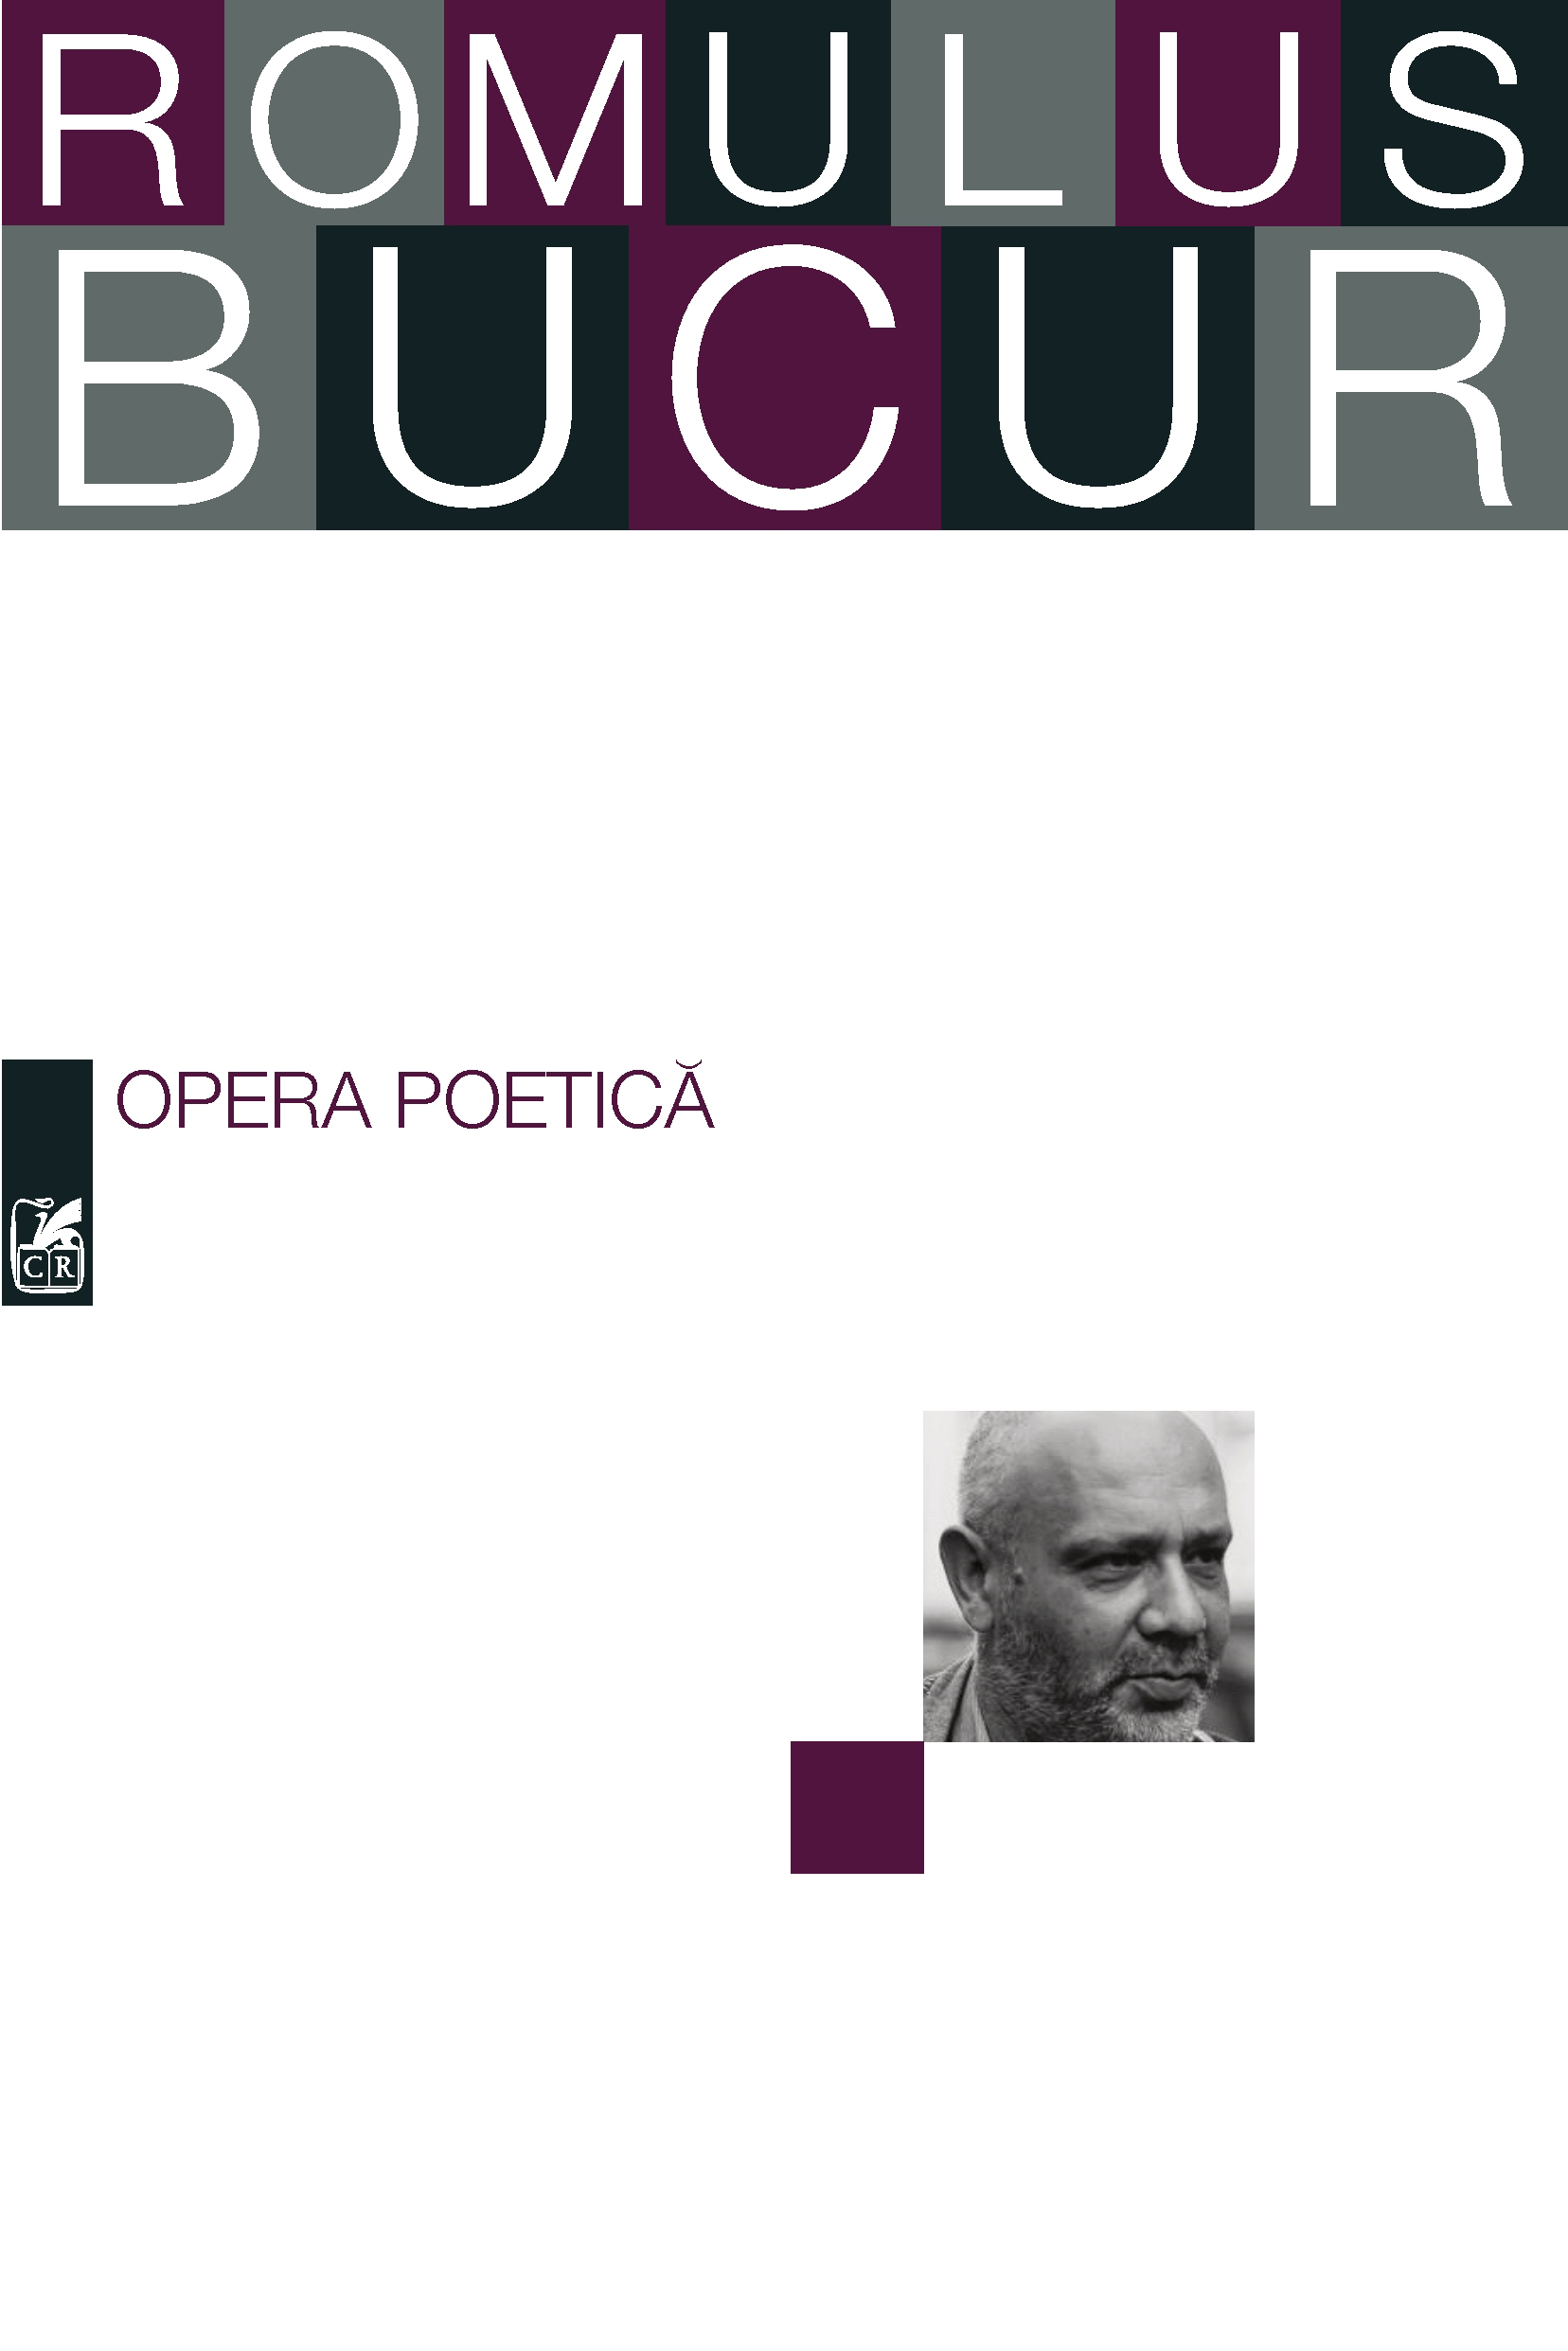 Opera poetica | Romulus Bucur Bucur poza 2022